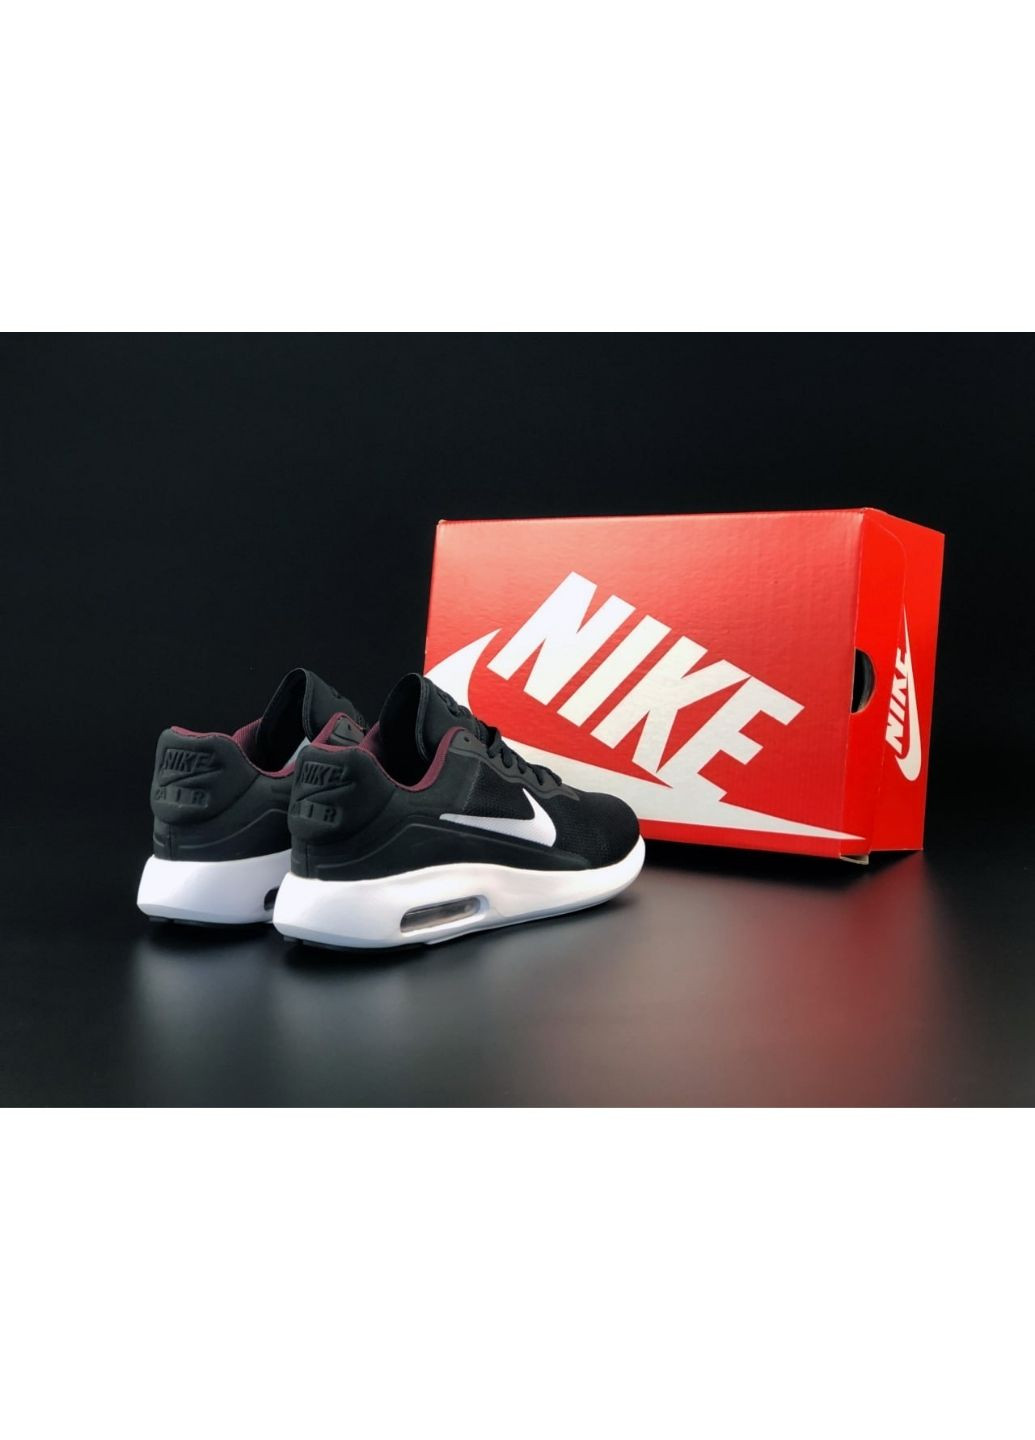 Черно-белые демисезонные мужские кроссовки черные с белым «no name» Nike